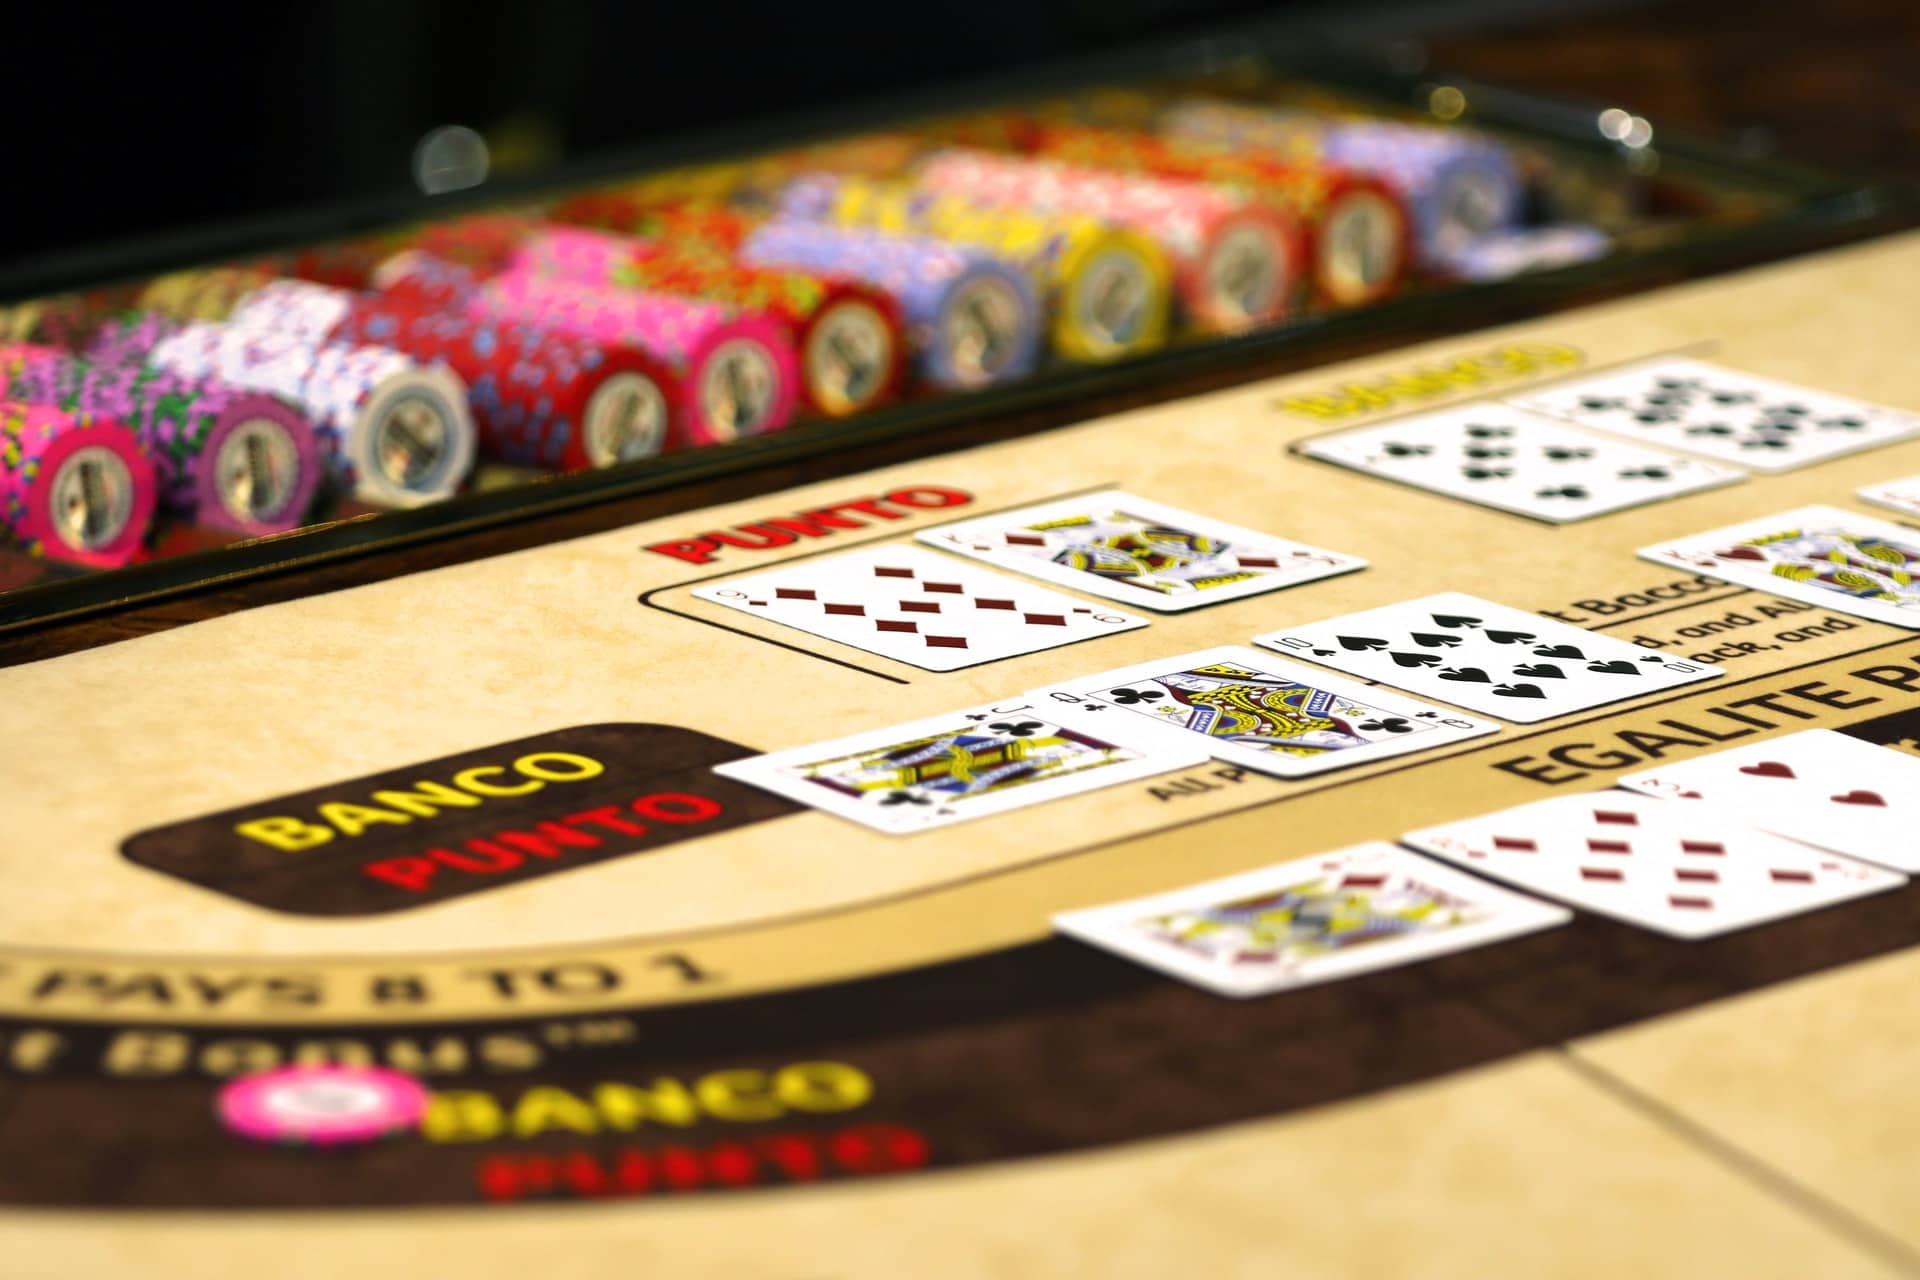 baccarat populairste casinospel ter wereld